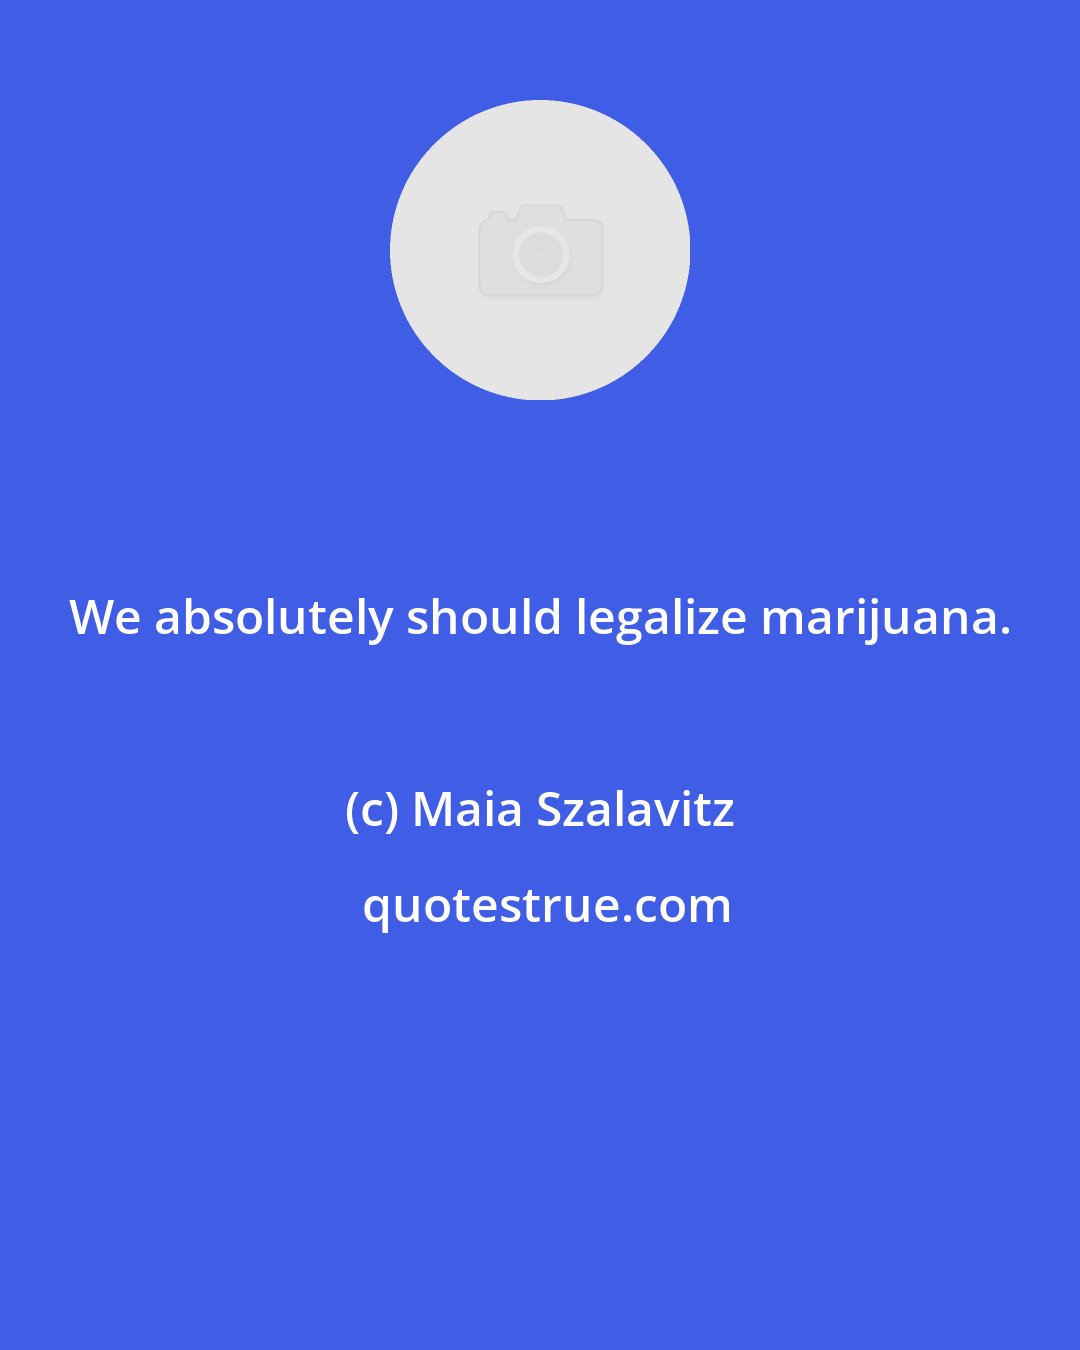 Maia Szalavitz: We absolutely should legalize marijuana.